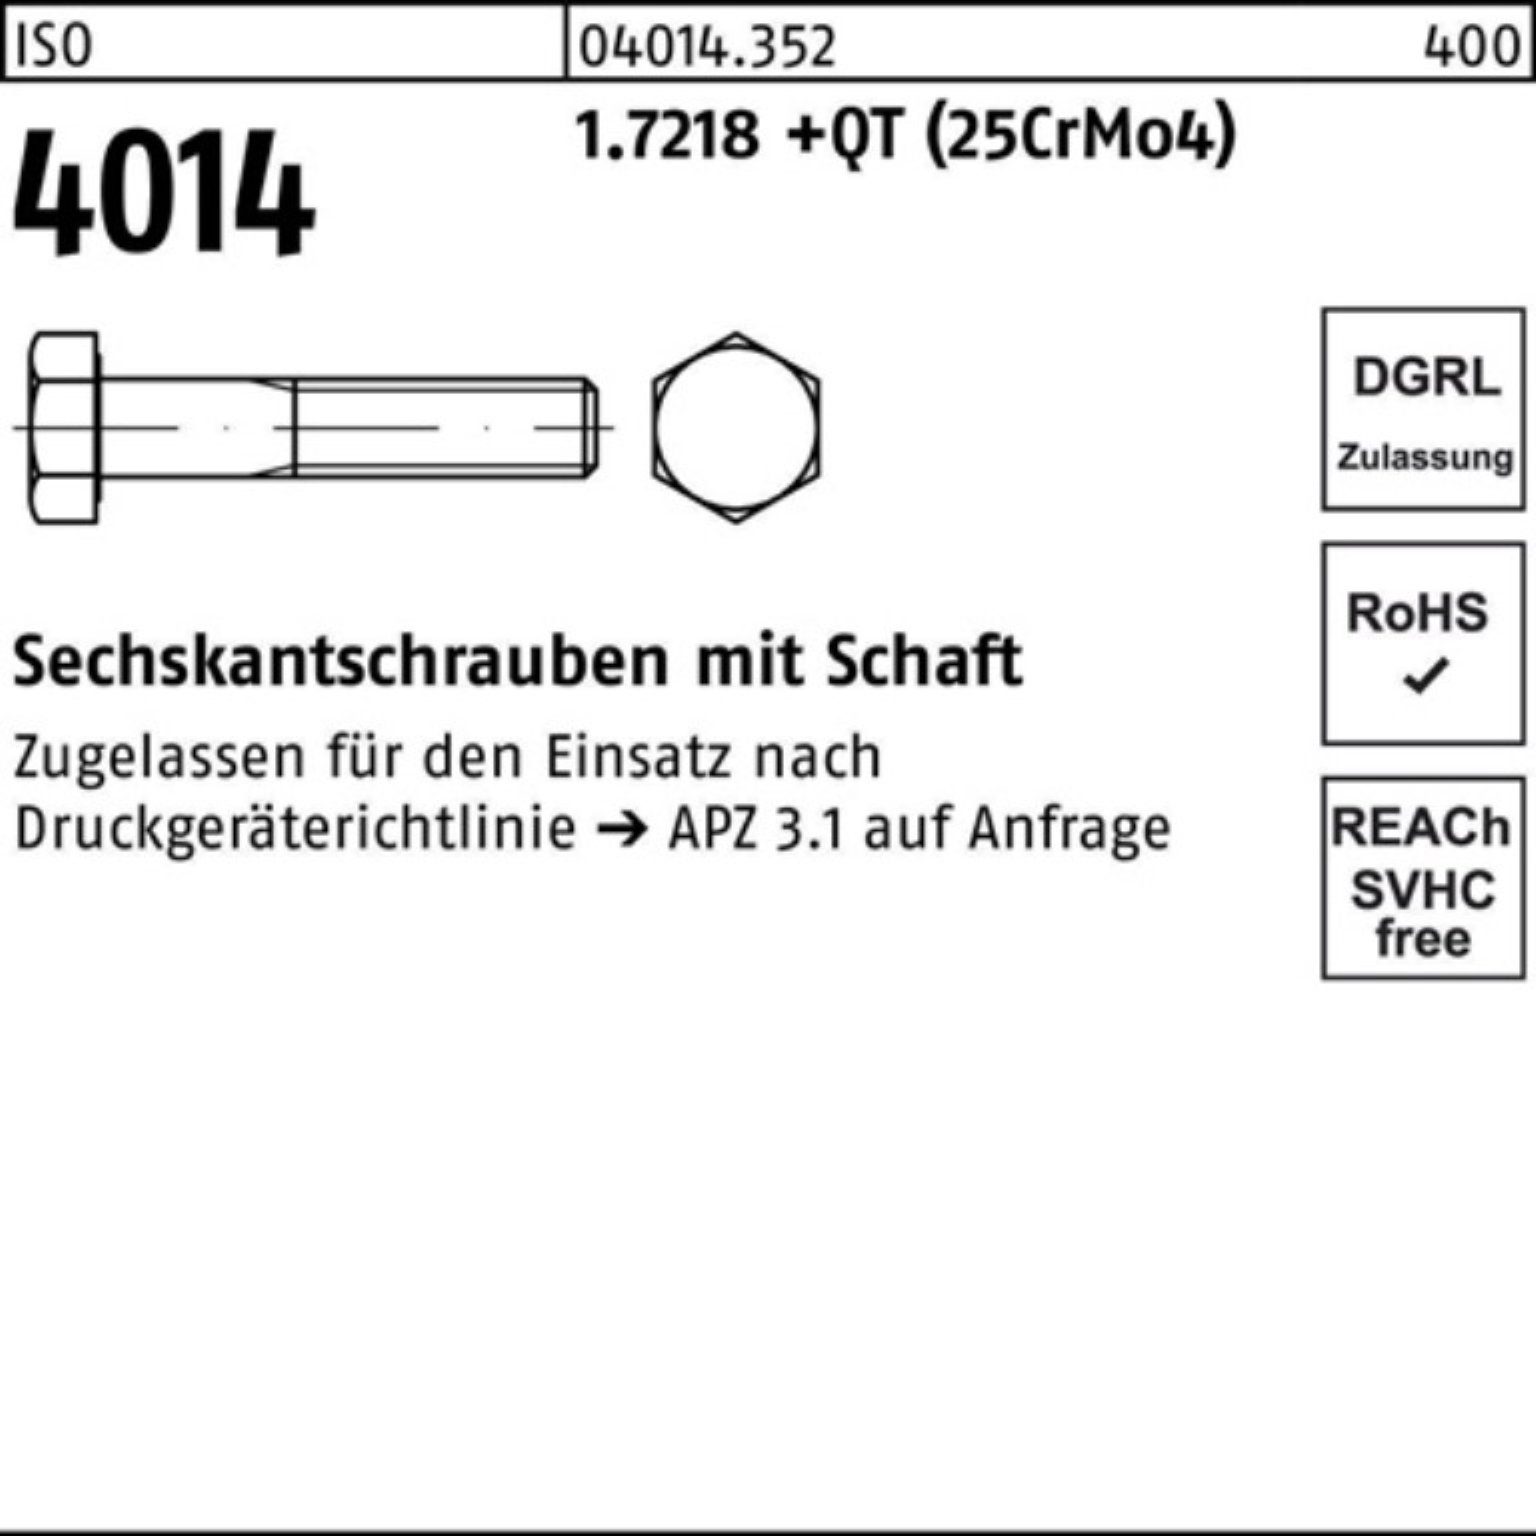 Bufab Sechskantschraube 100er Pack Sechskantschraube +QT (25Cr ISO 140 Schaft 4014 1.7218 M33x